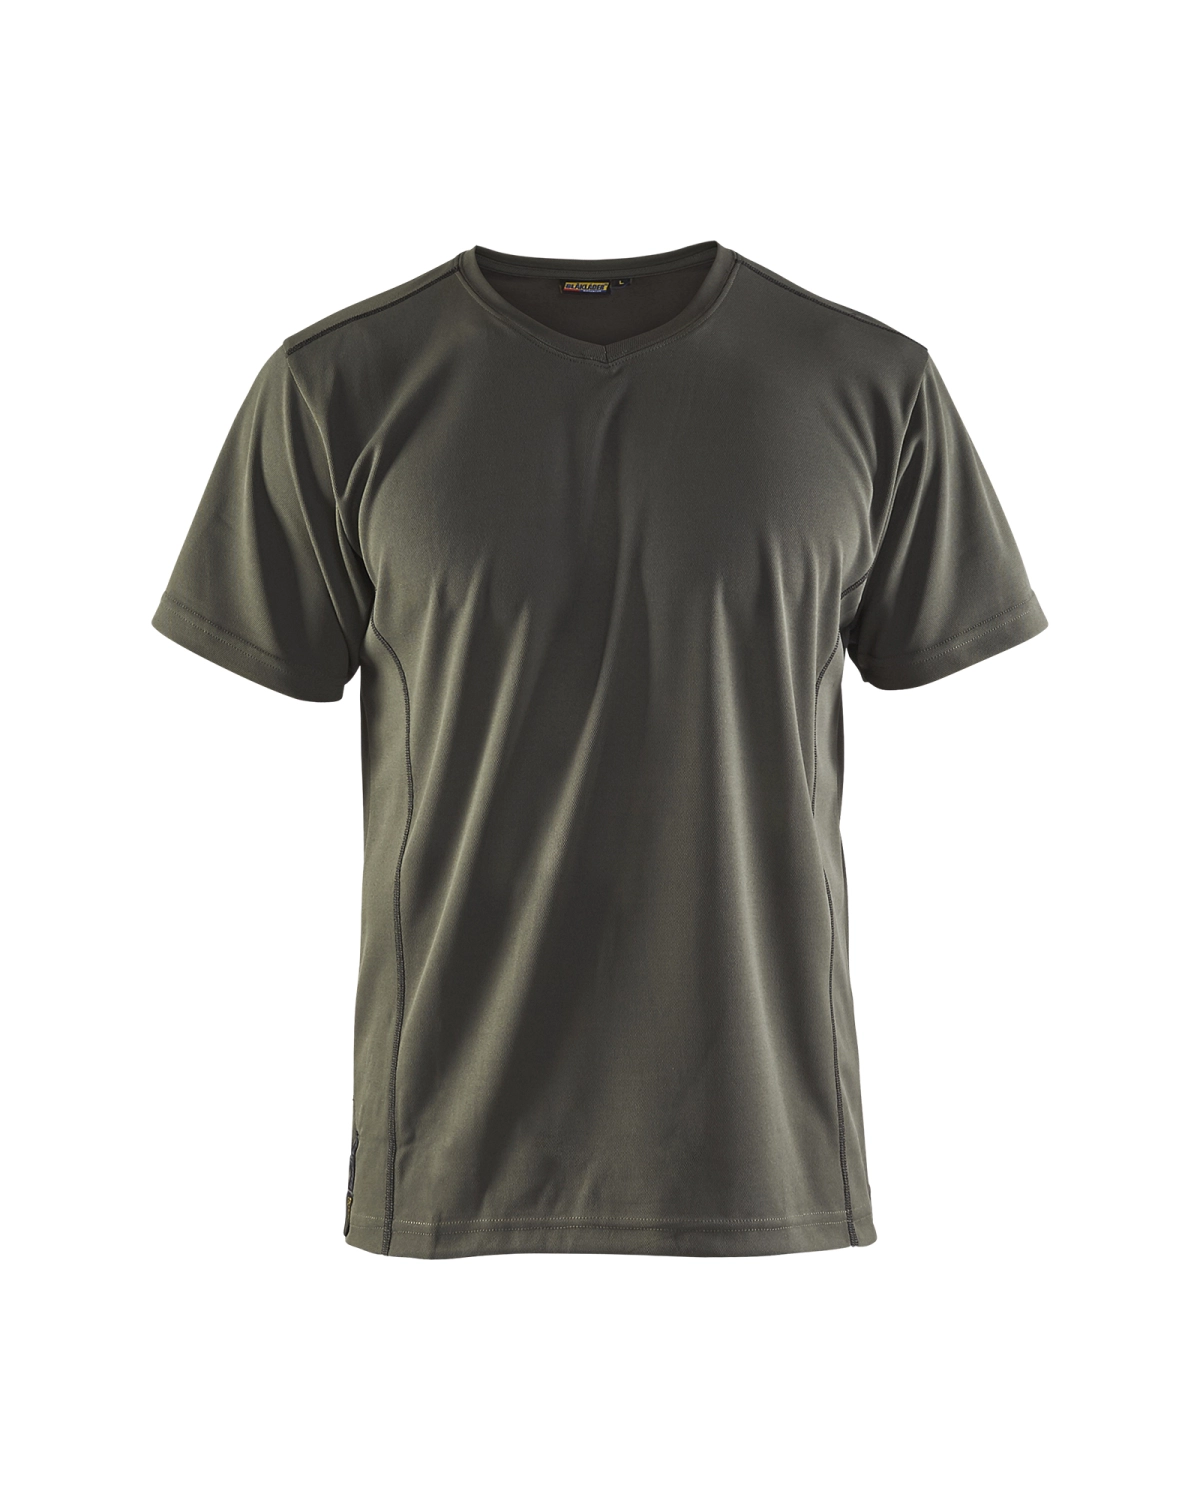 Blåkläder 3323 UV t-shirt - army groen - XL-image